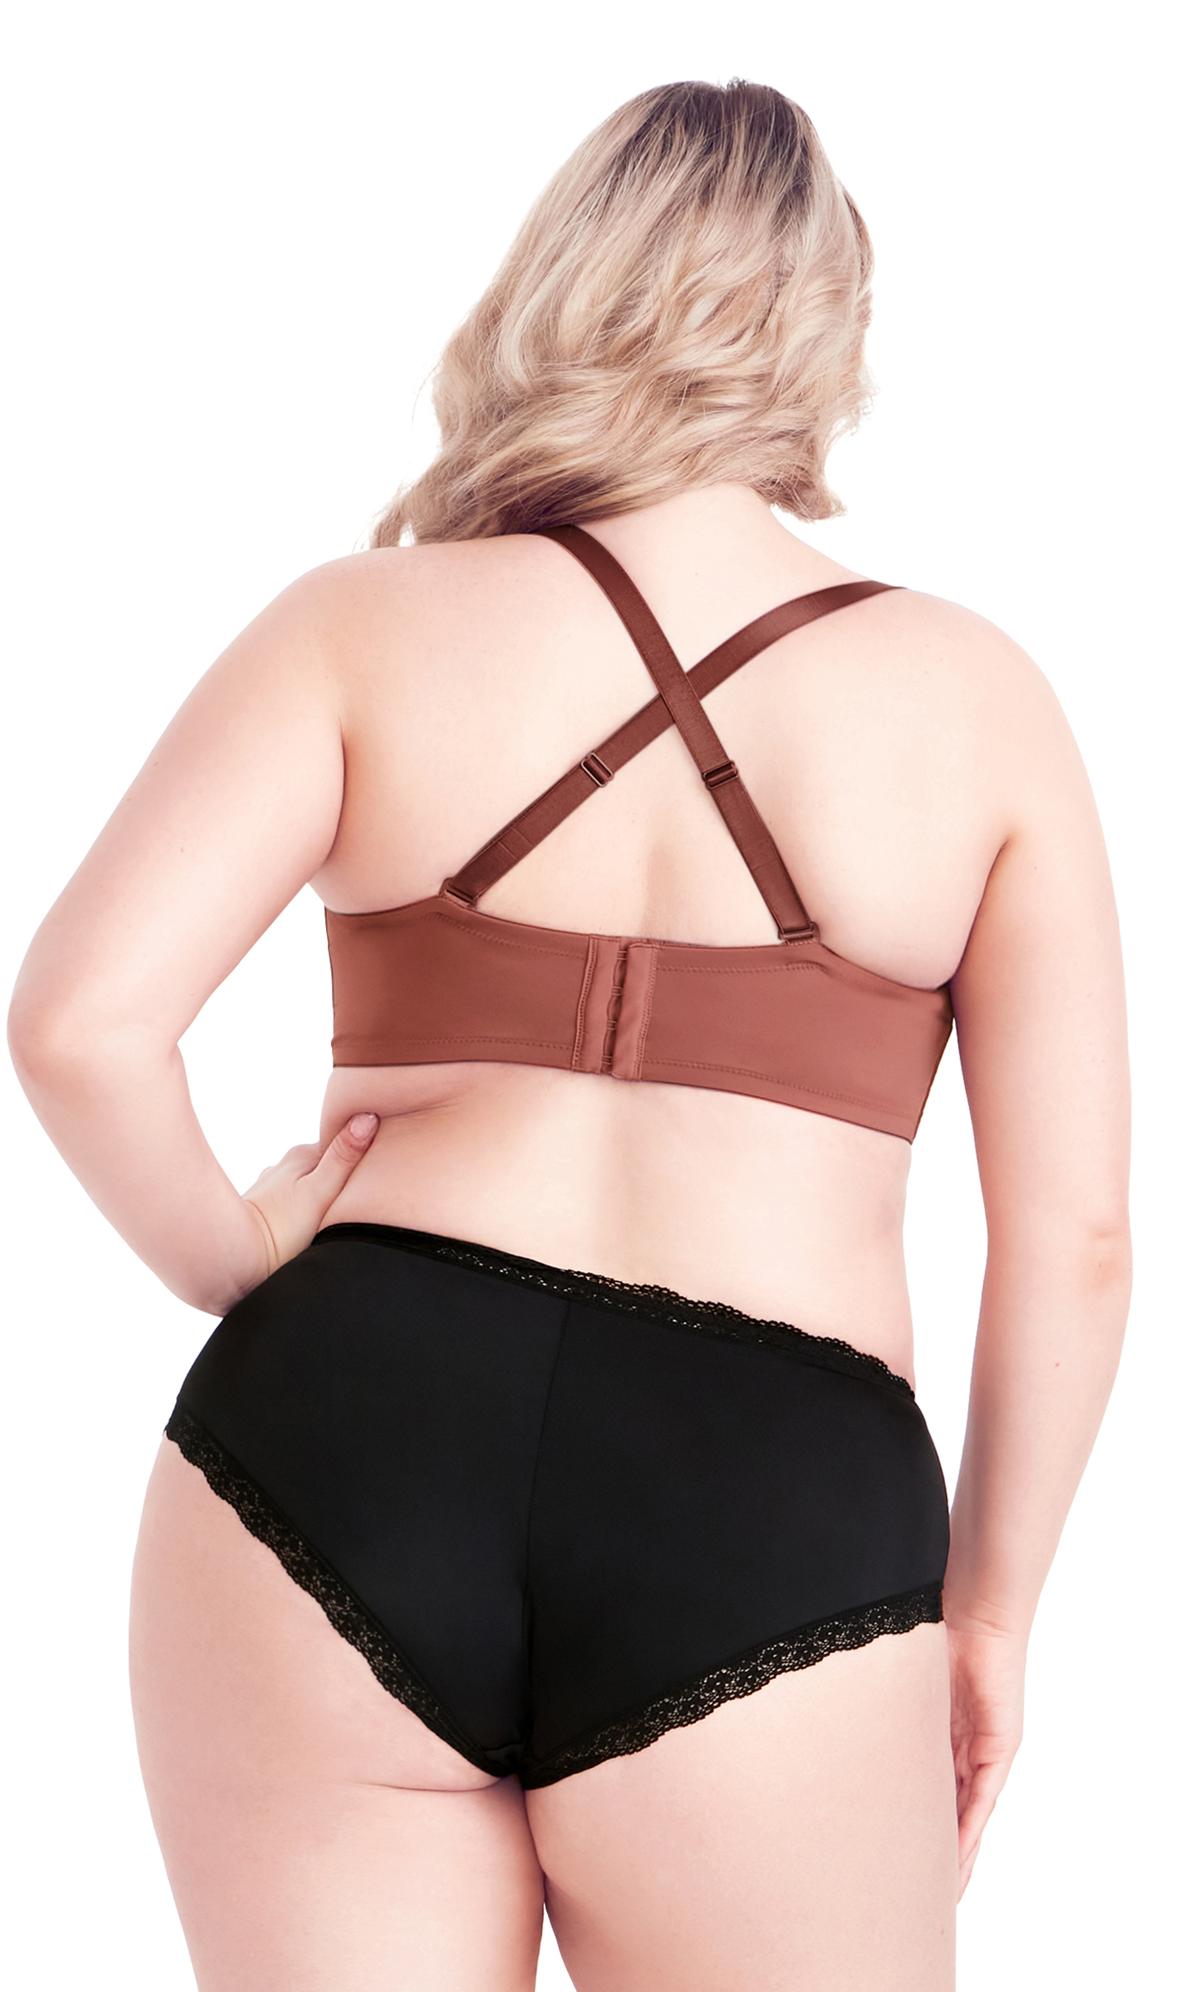 visible bra straps  Glenys' Rome & Beyond